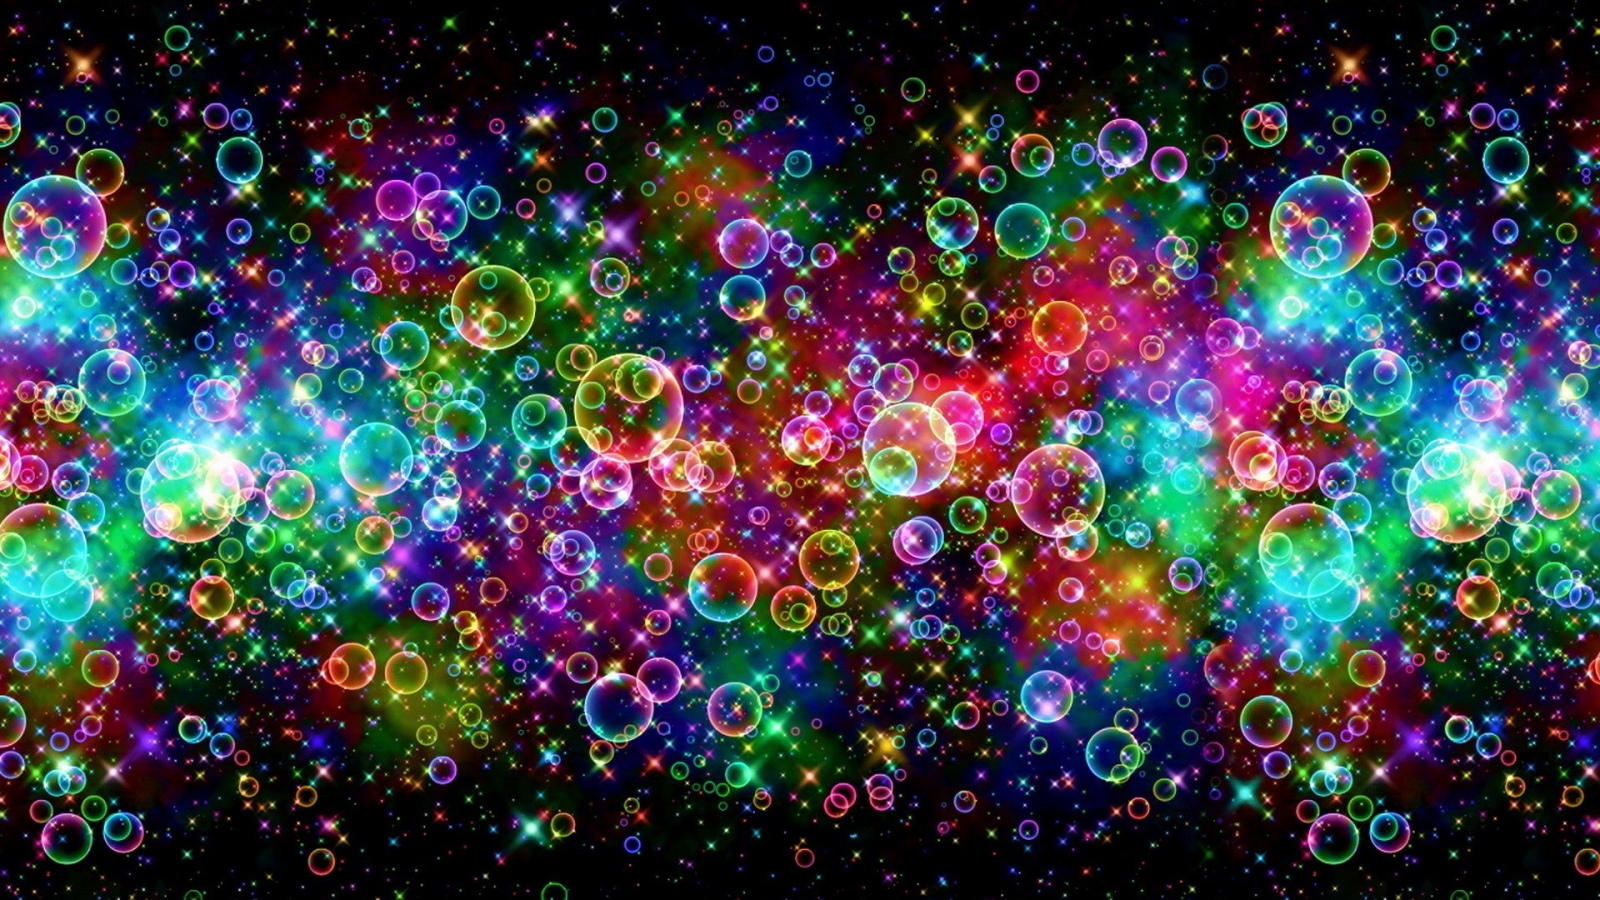 радужные, красота, цветные, rainbow, bubble, пузыри, красиво